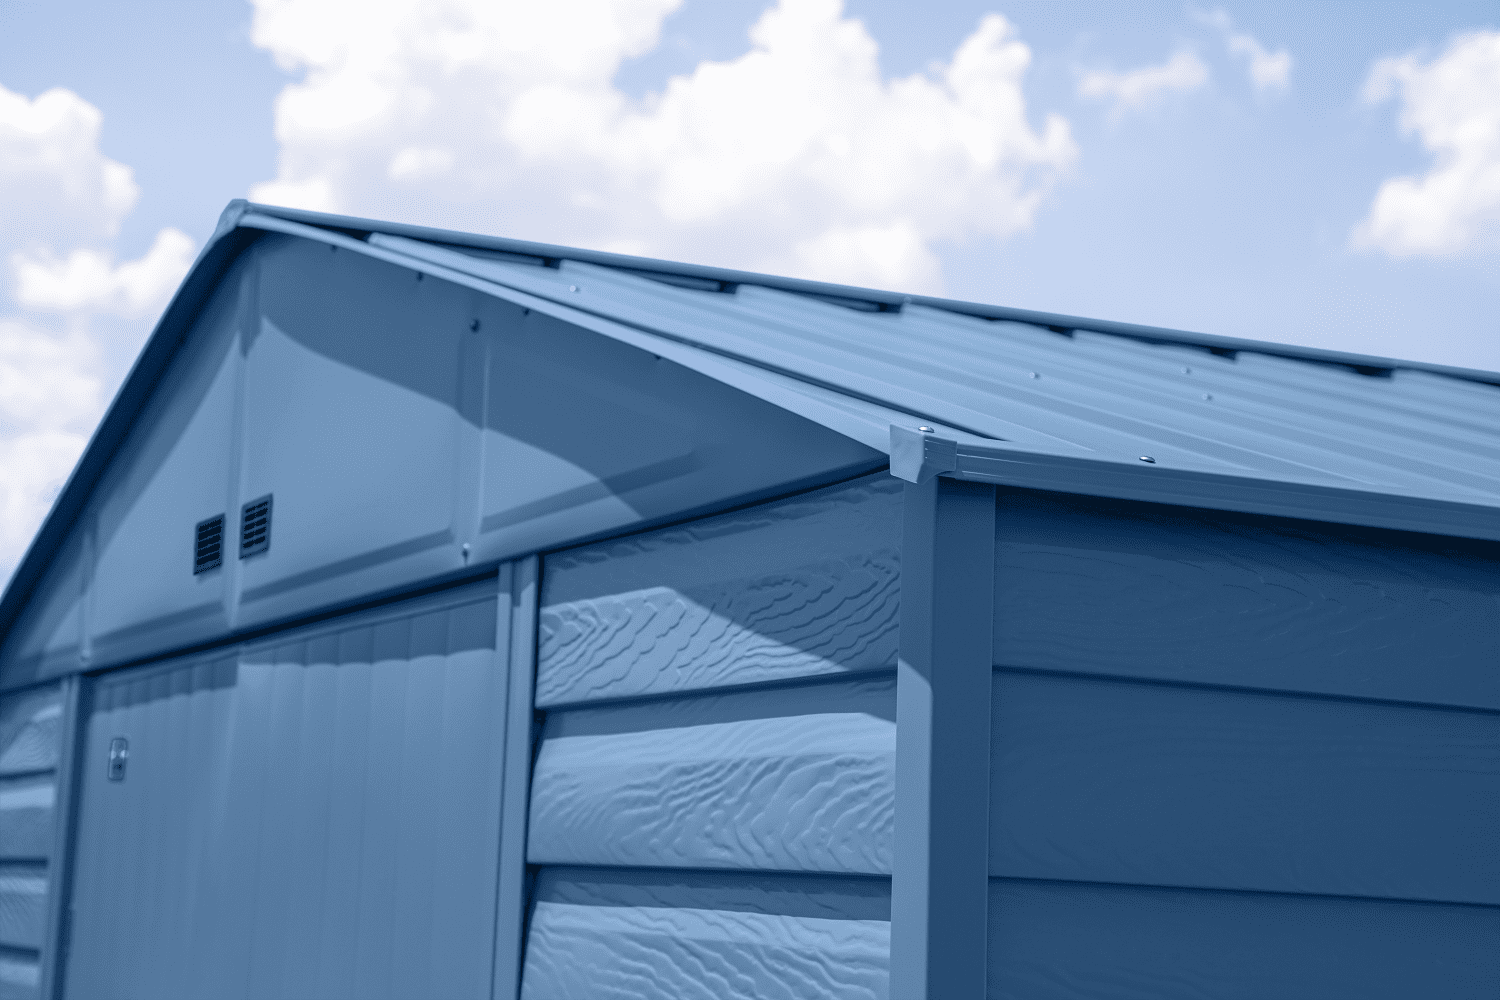 Arrow Select Steel Storage Shed, 10x14, Blue Grey